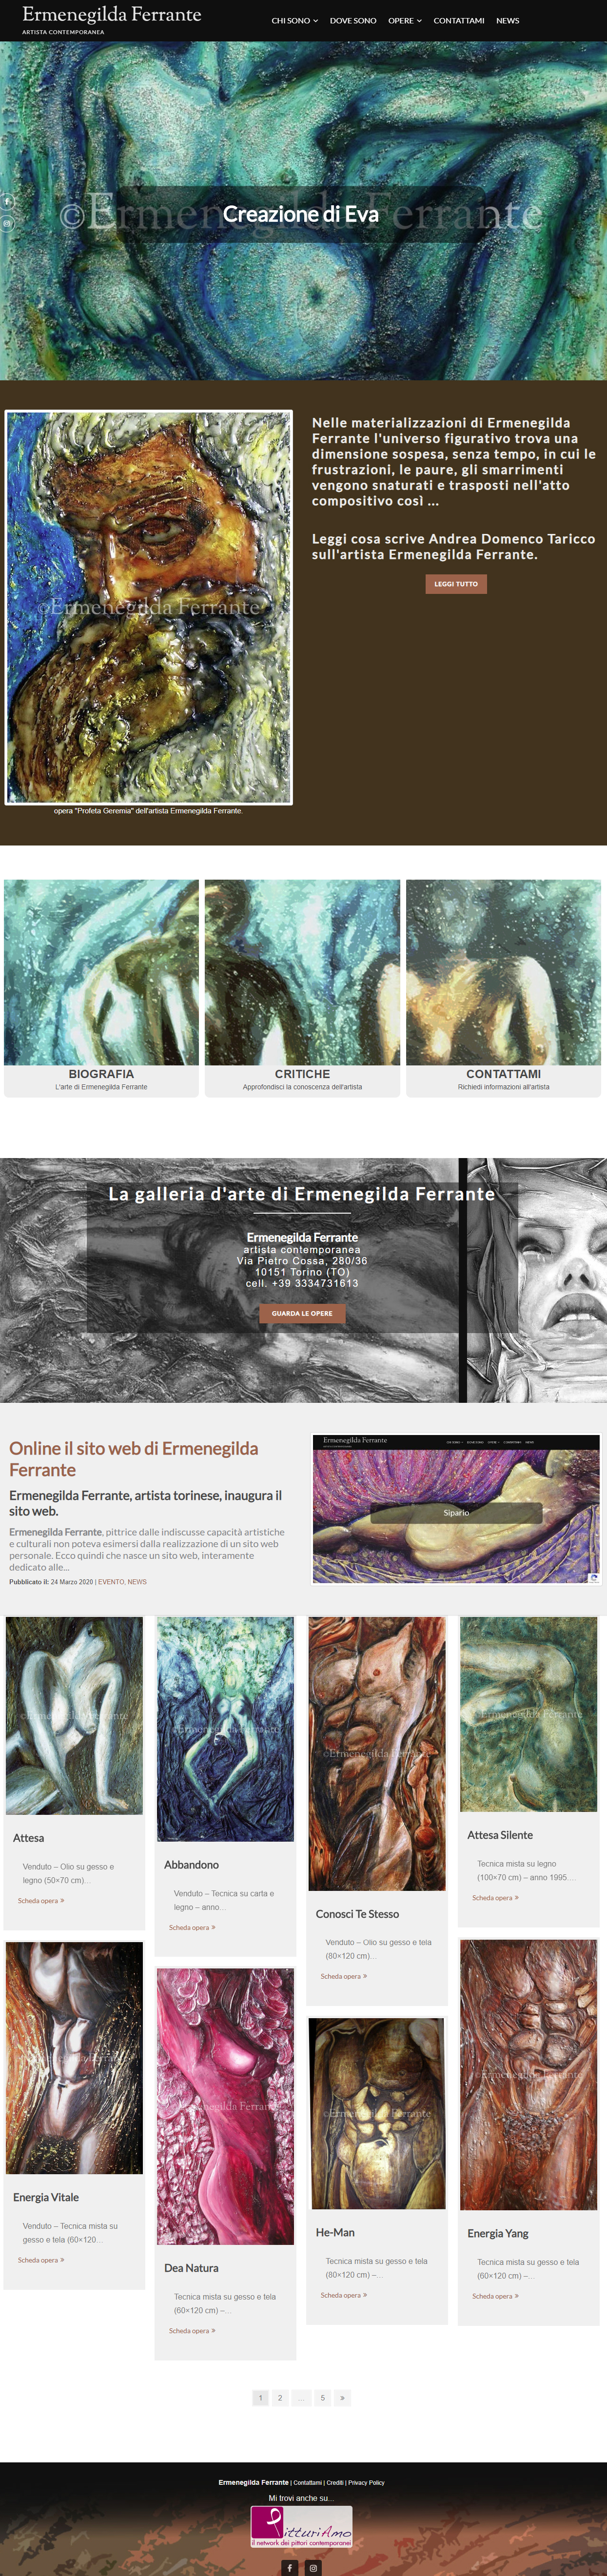 Sito per l'artista Ermenegilda Ferrante - Homepage